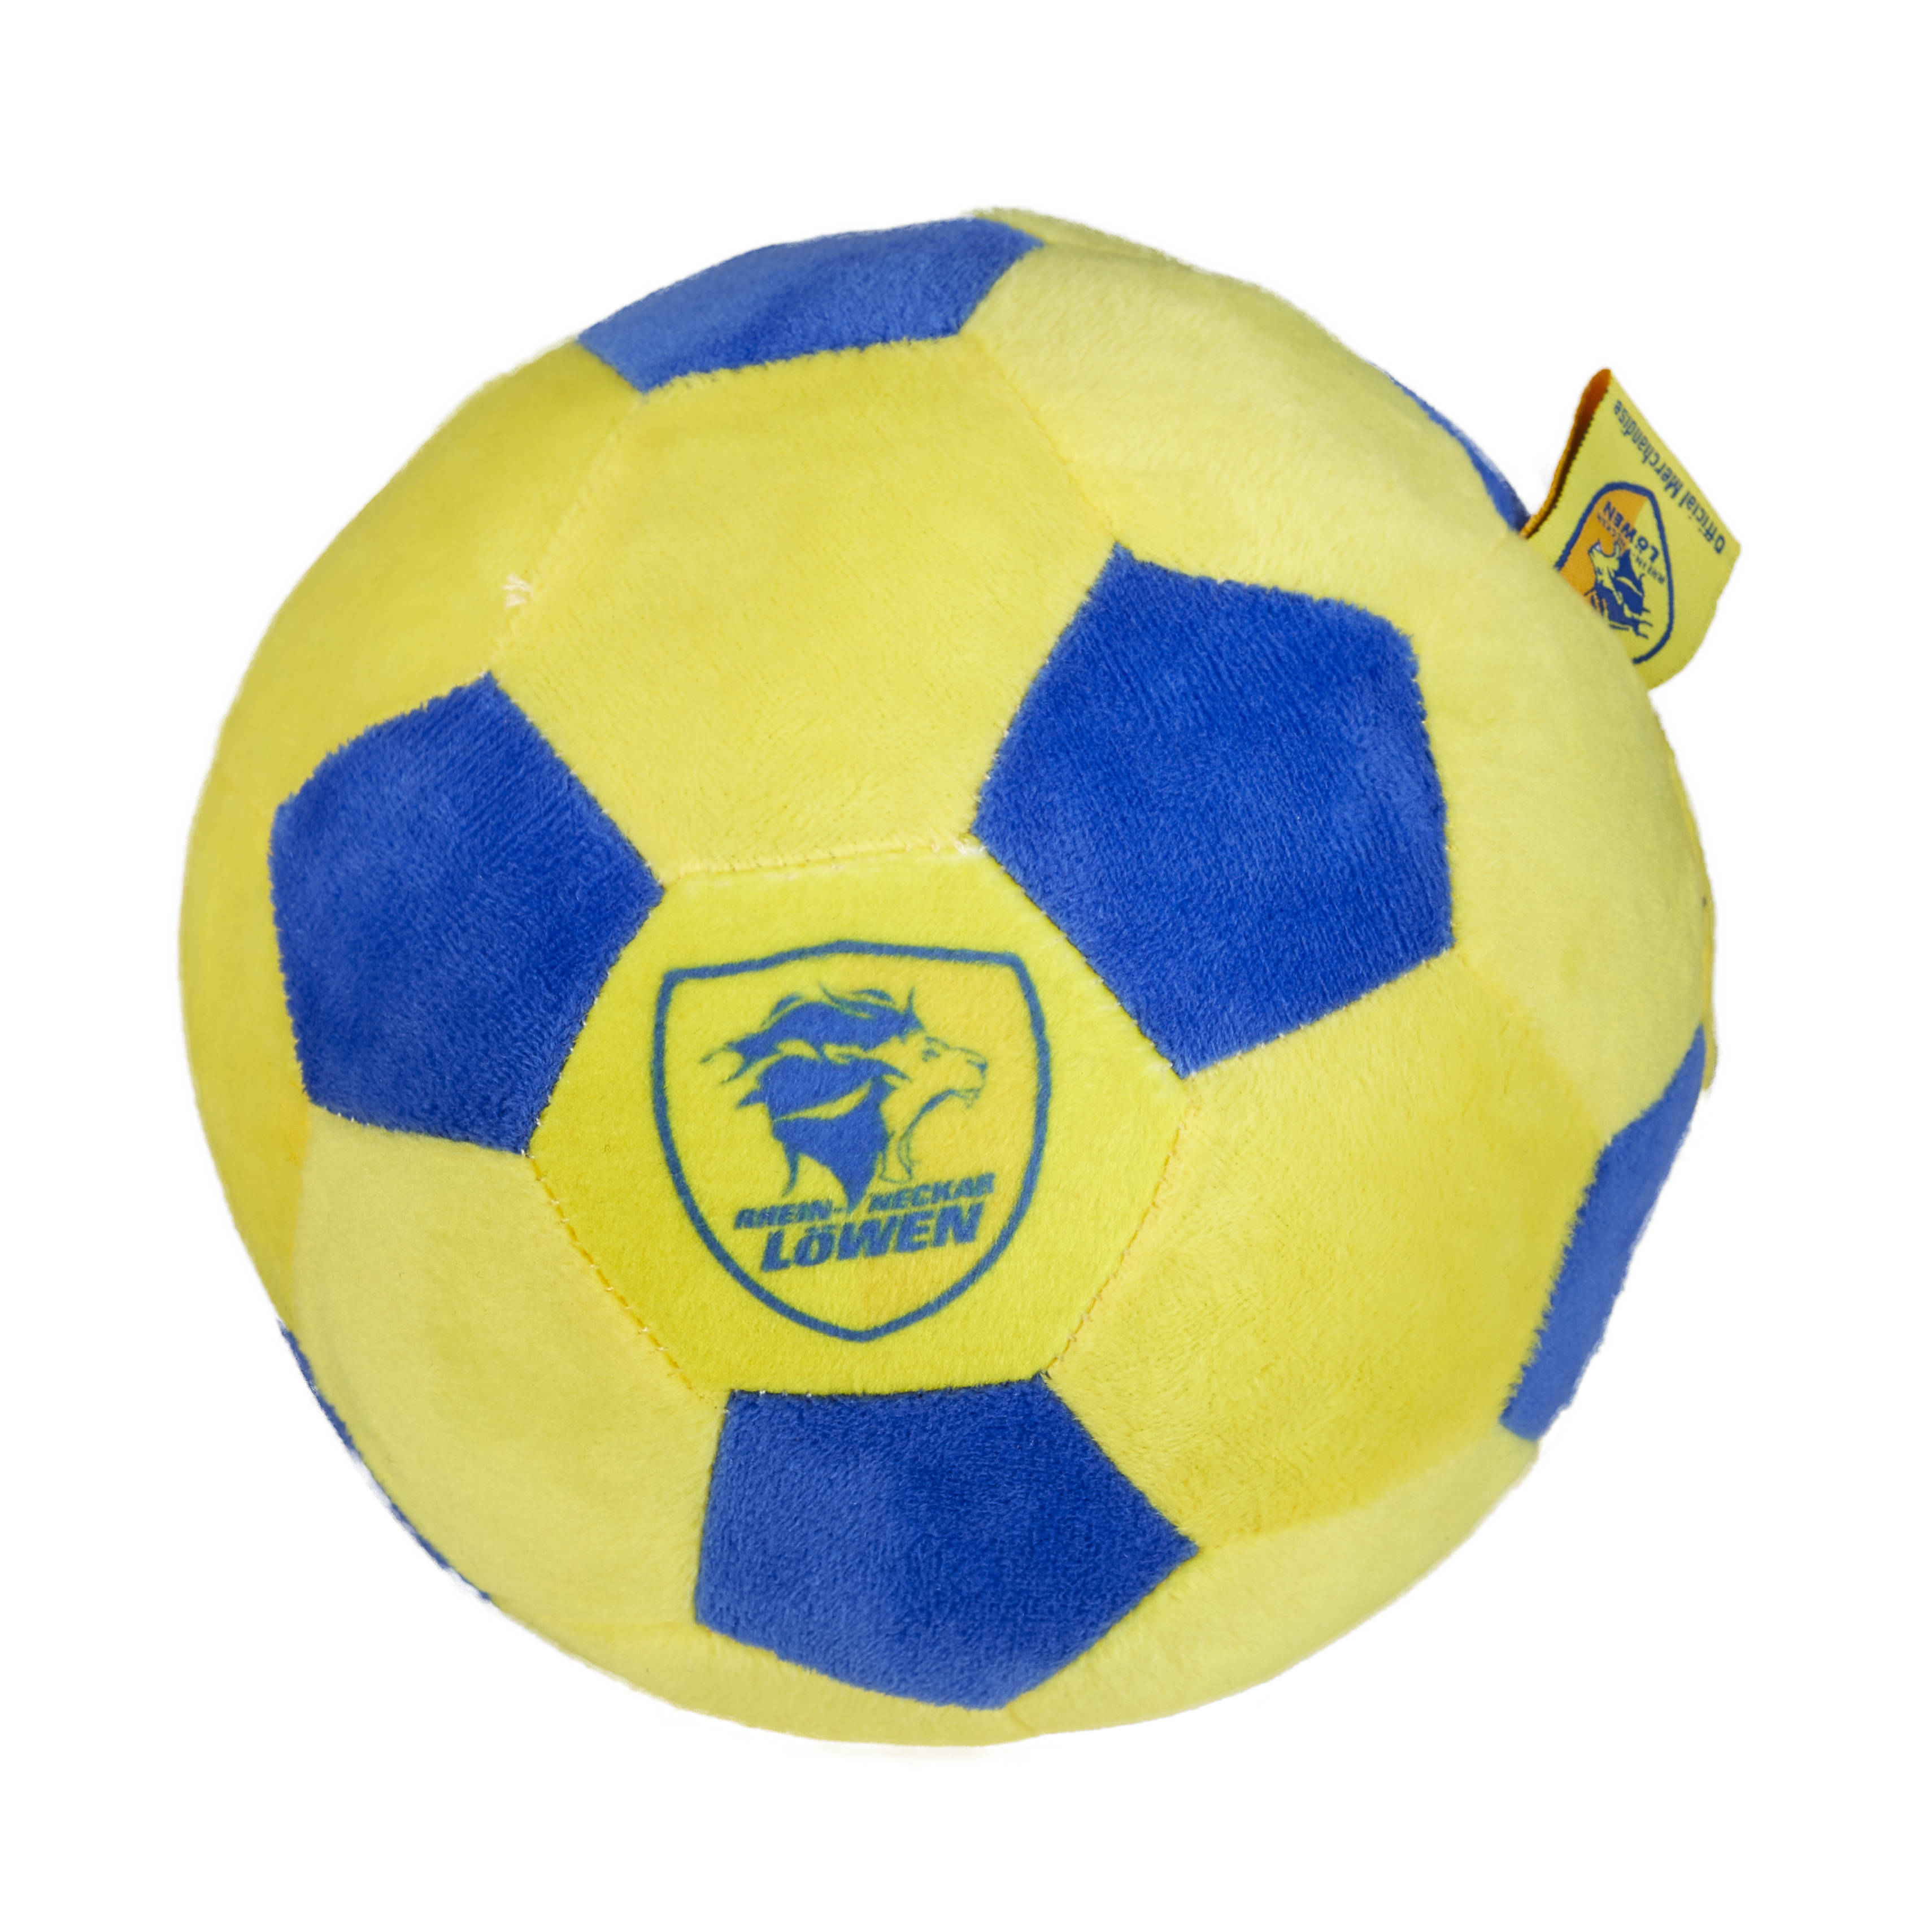 Löwen Plüsch-Handball (Größe 2)